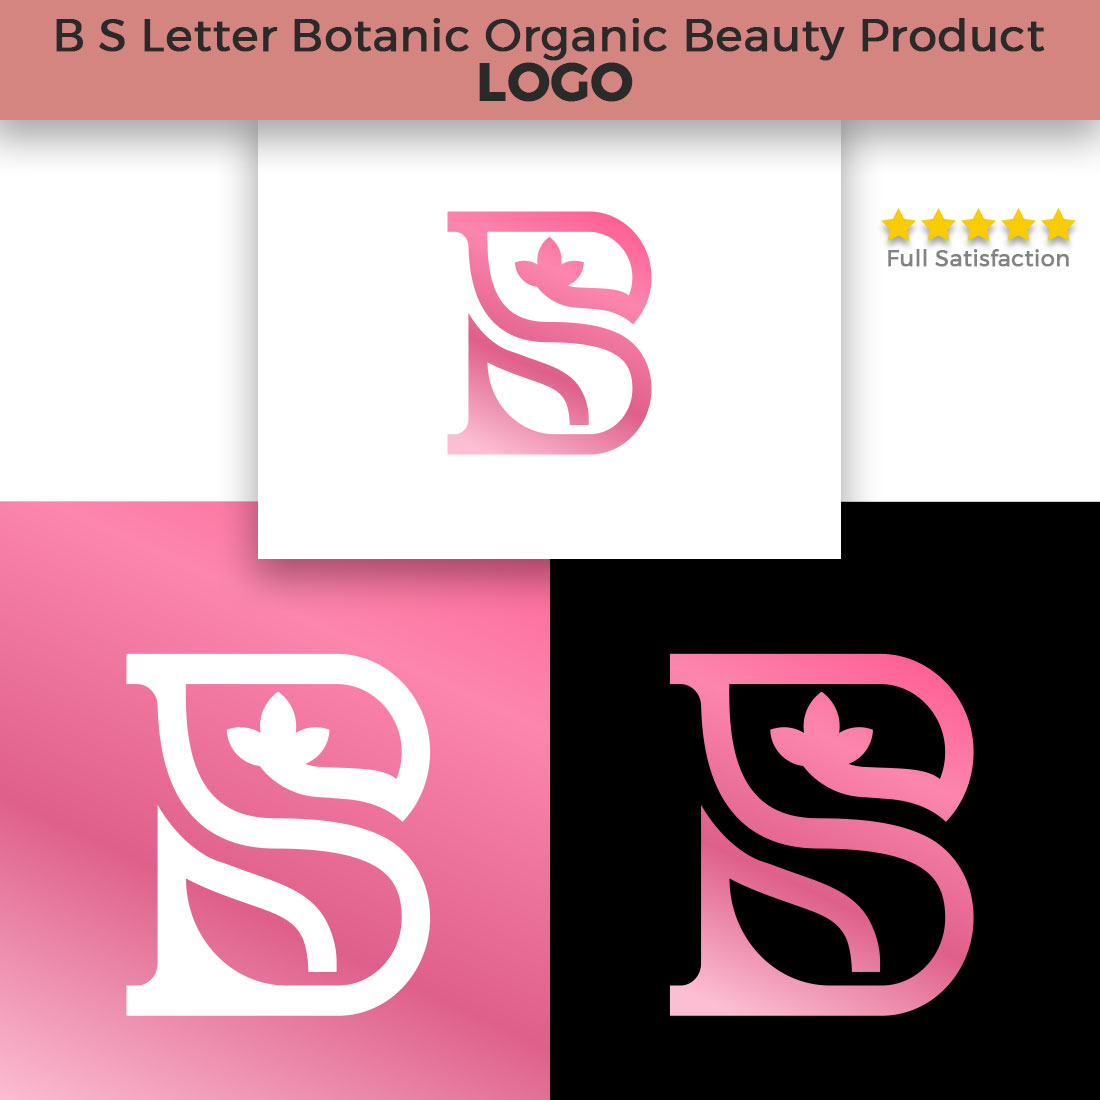 Botanic Leaf B S Letter Luxury Logo cover image.